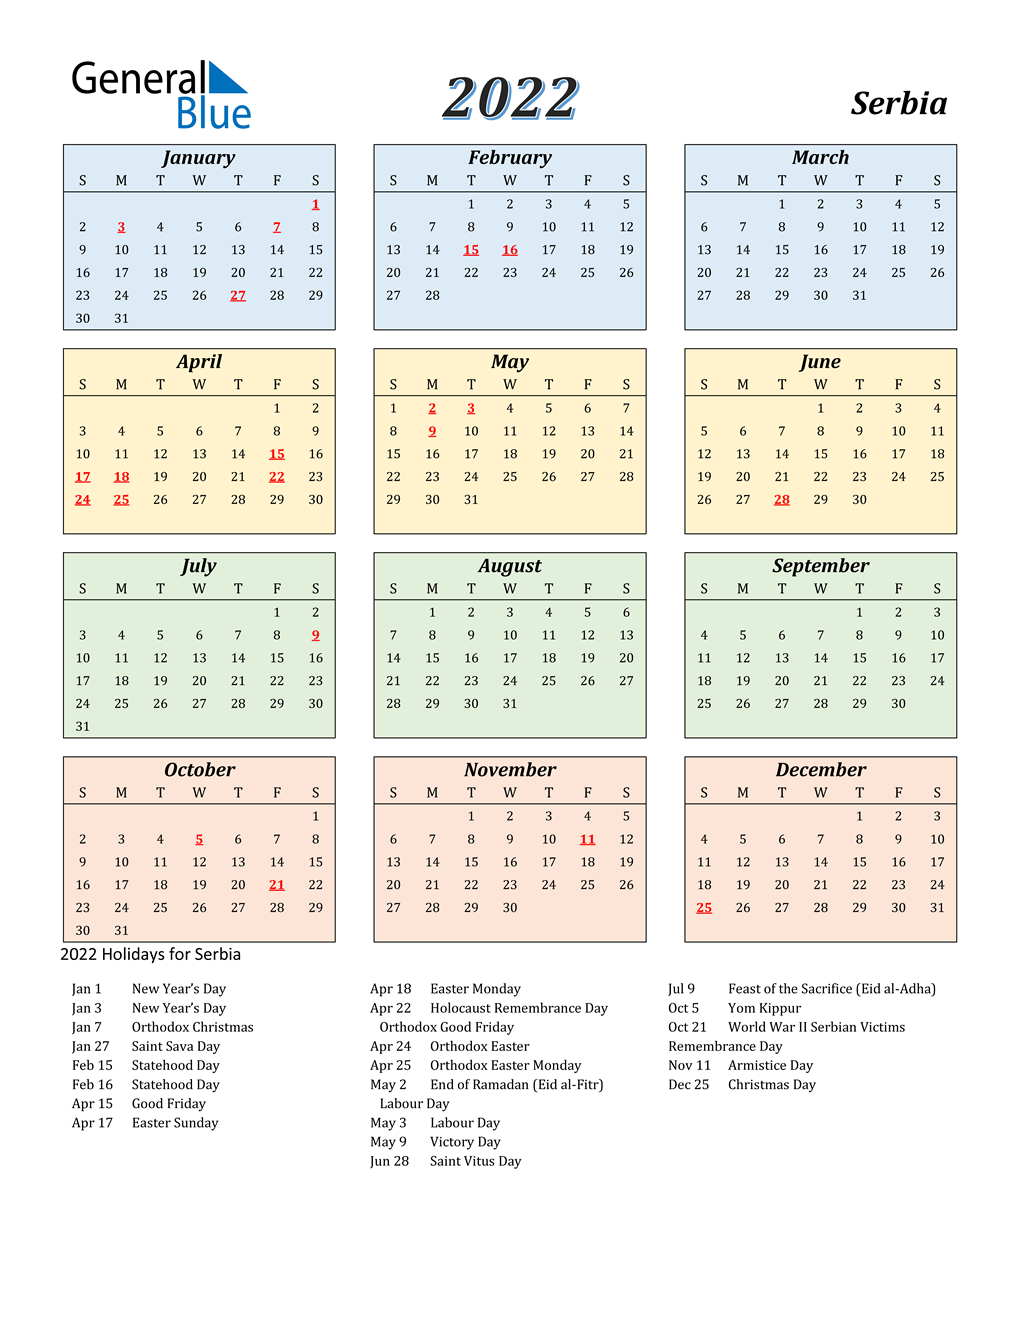 Serbian Orthodox Calendar 2022 2022 Serbia Calendar With Holidays